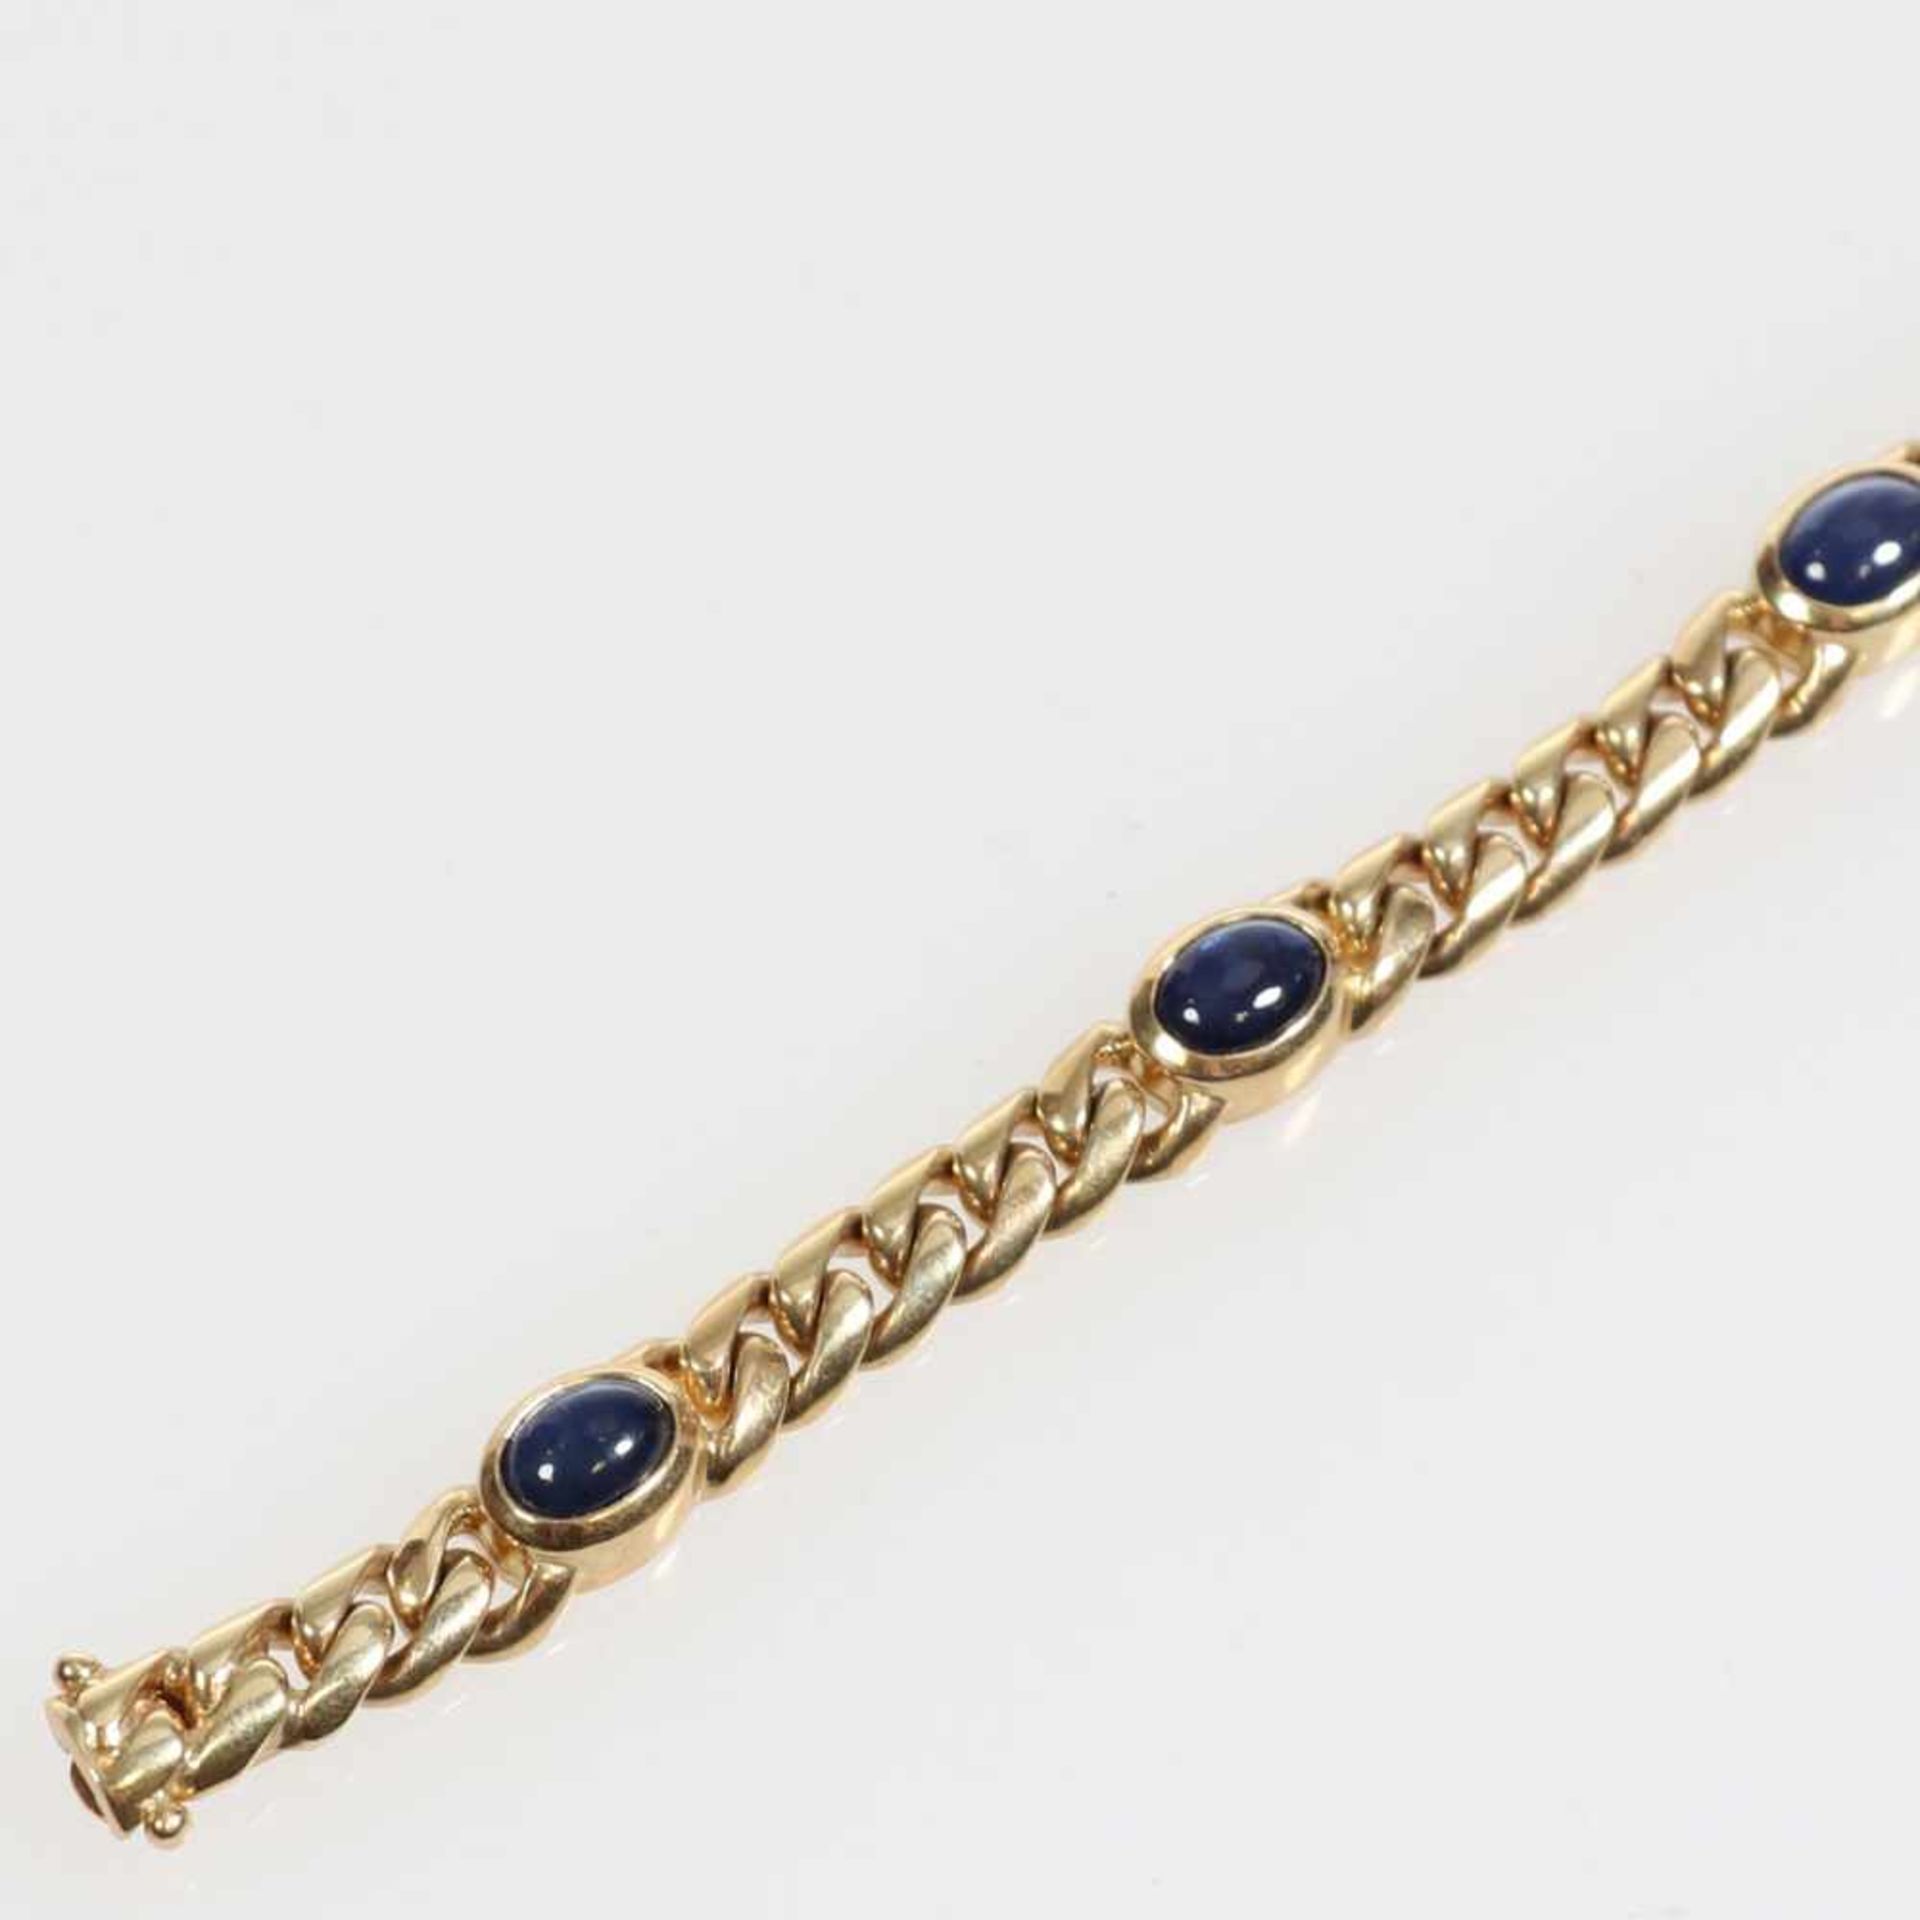 Klassisches Cabochon-Armband mit Saphiren585/- Gelbgold, gestemp. Gewicht: 36,1 g. 5 Saphire zus.